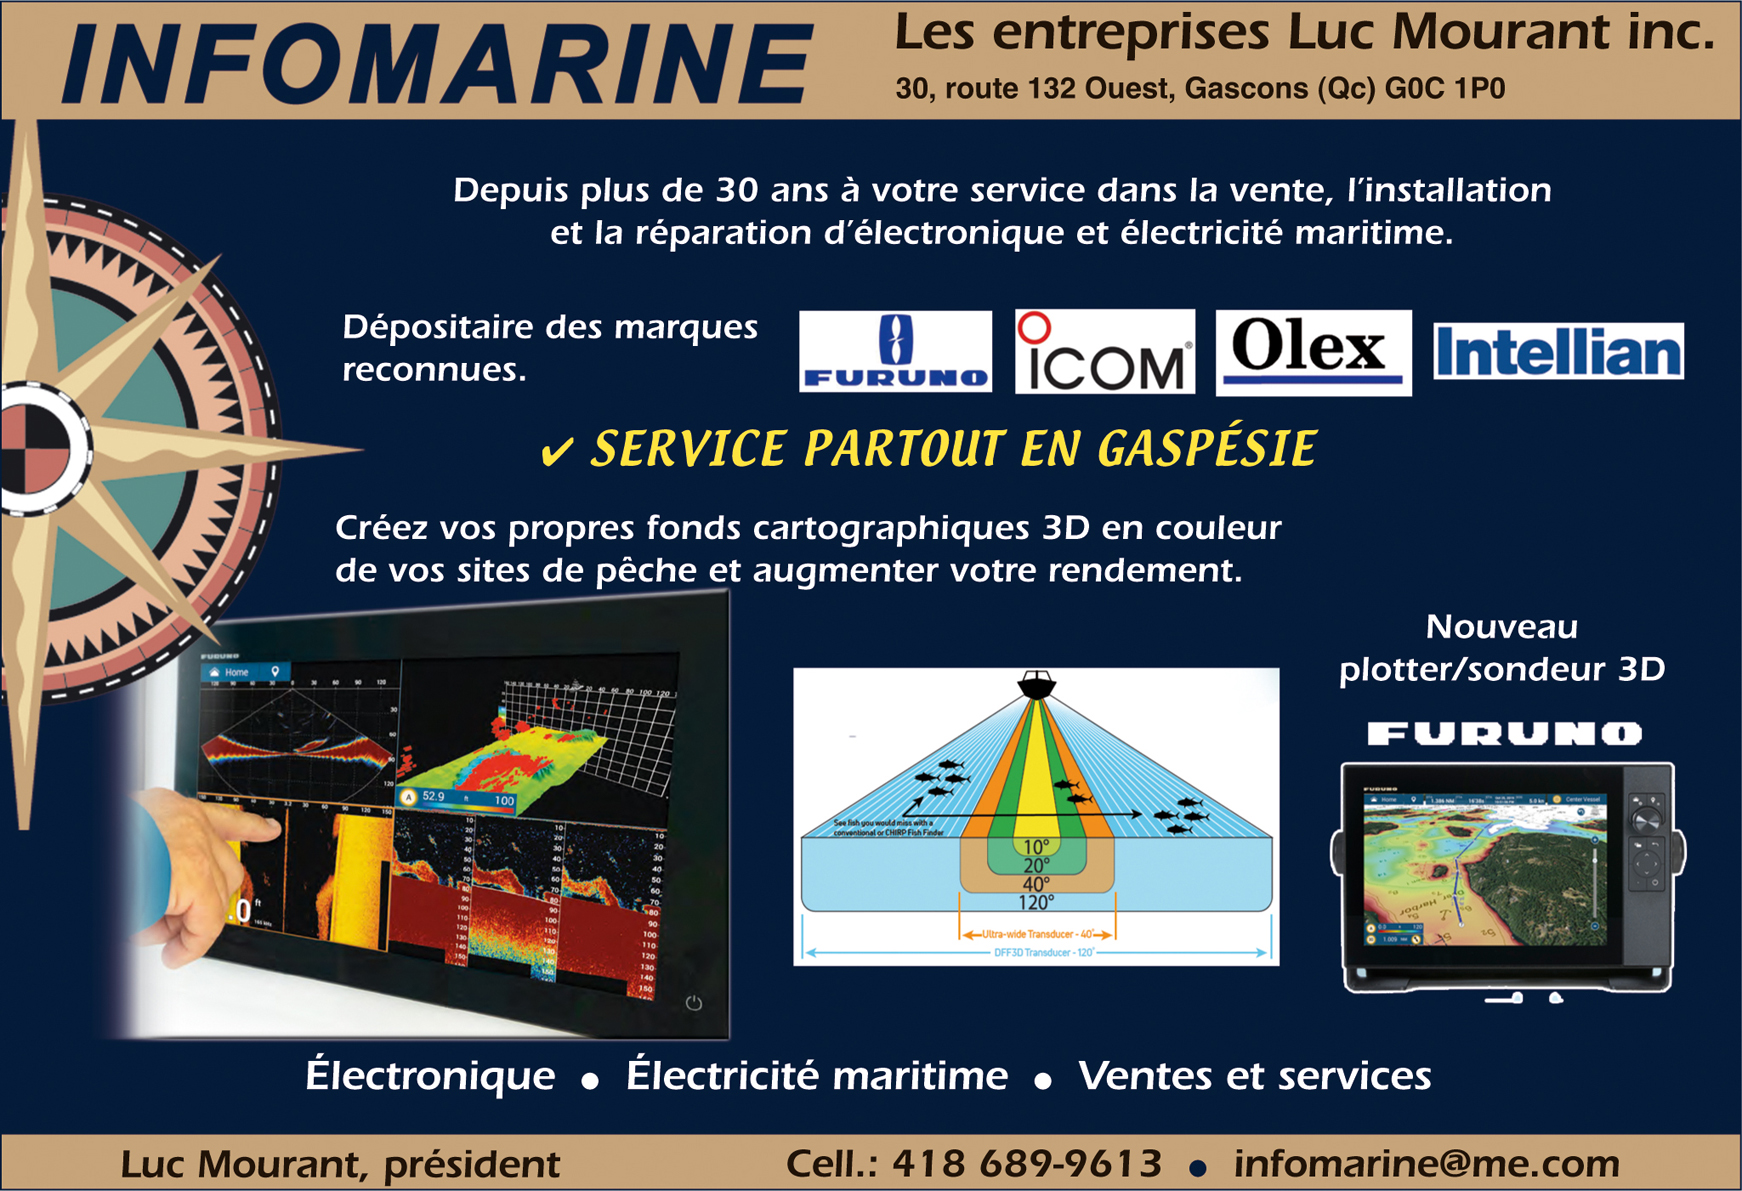 INFOMARINE Les entreprises Luc Mourant inc.